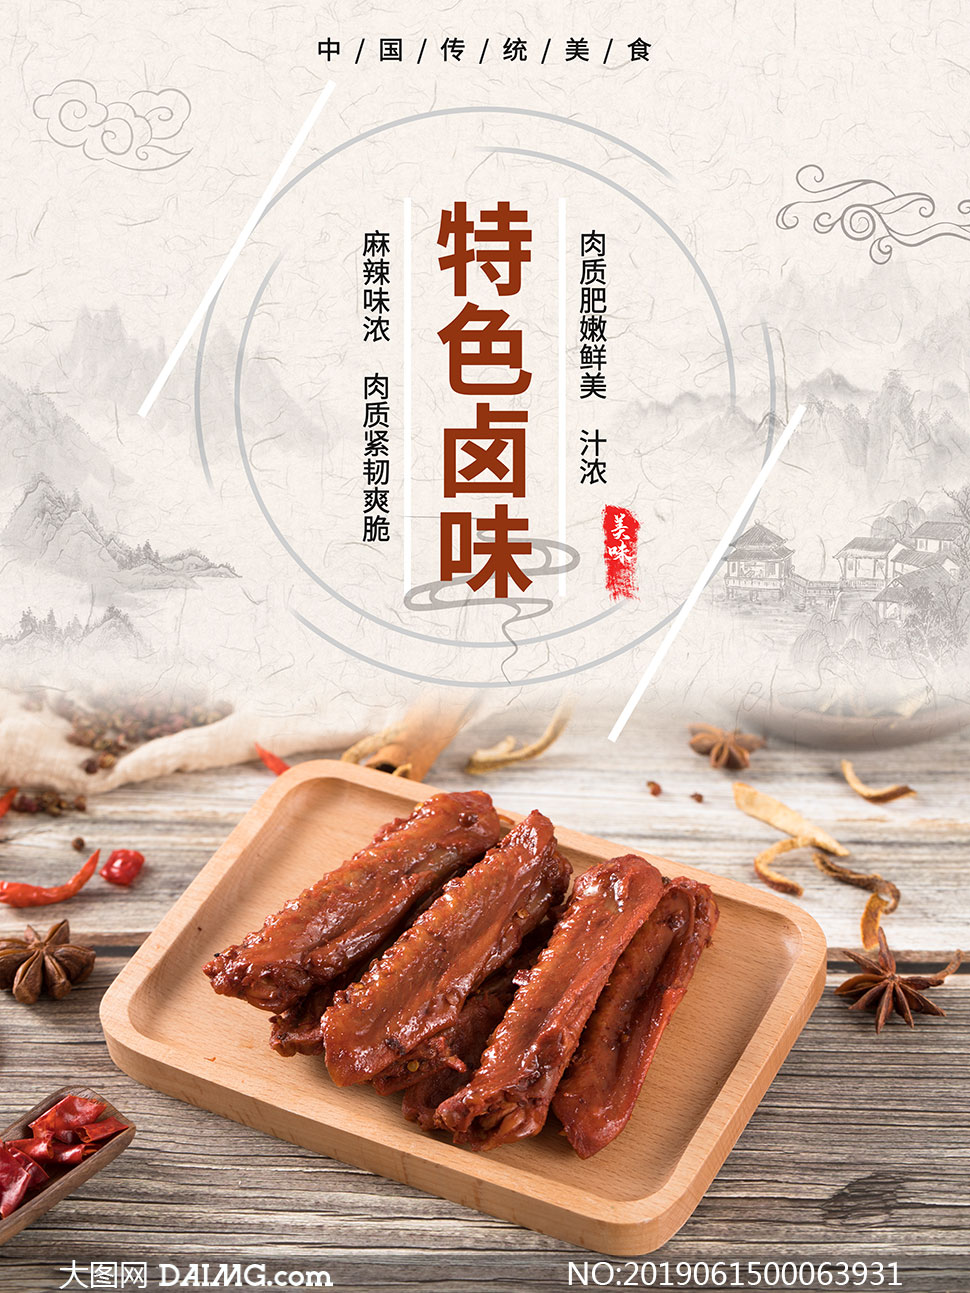 中国传统特色卤味宣传海报psd素材